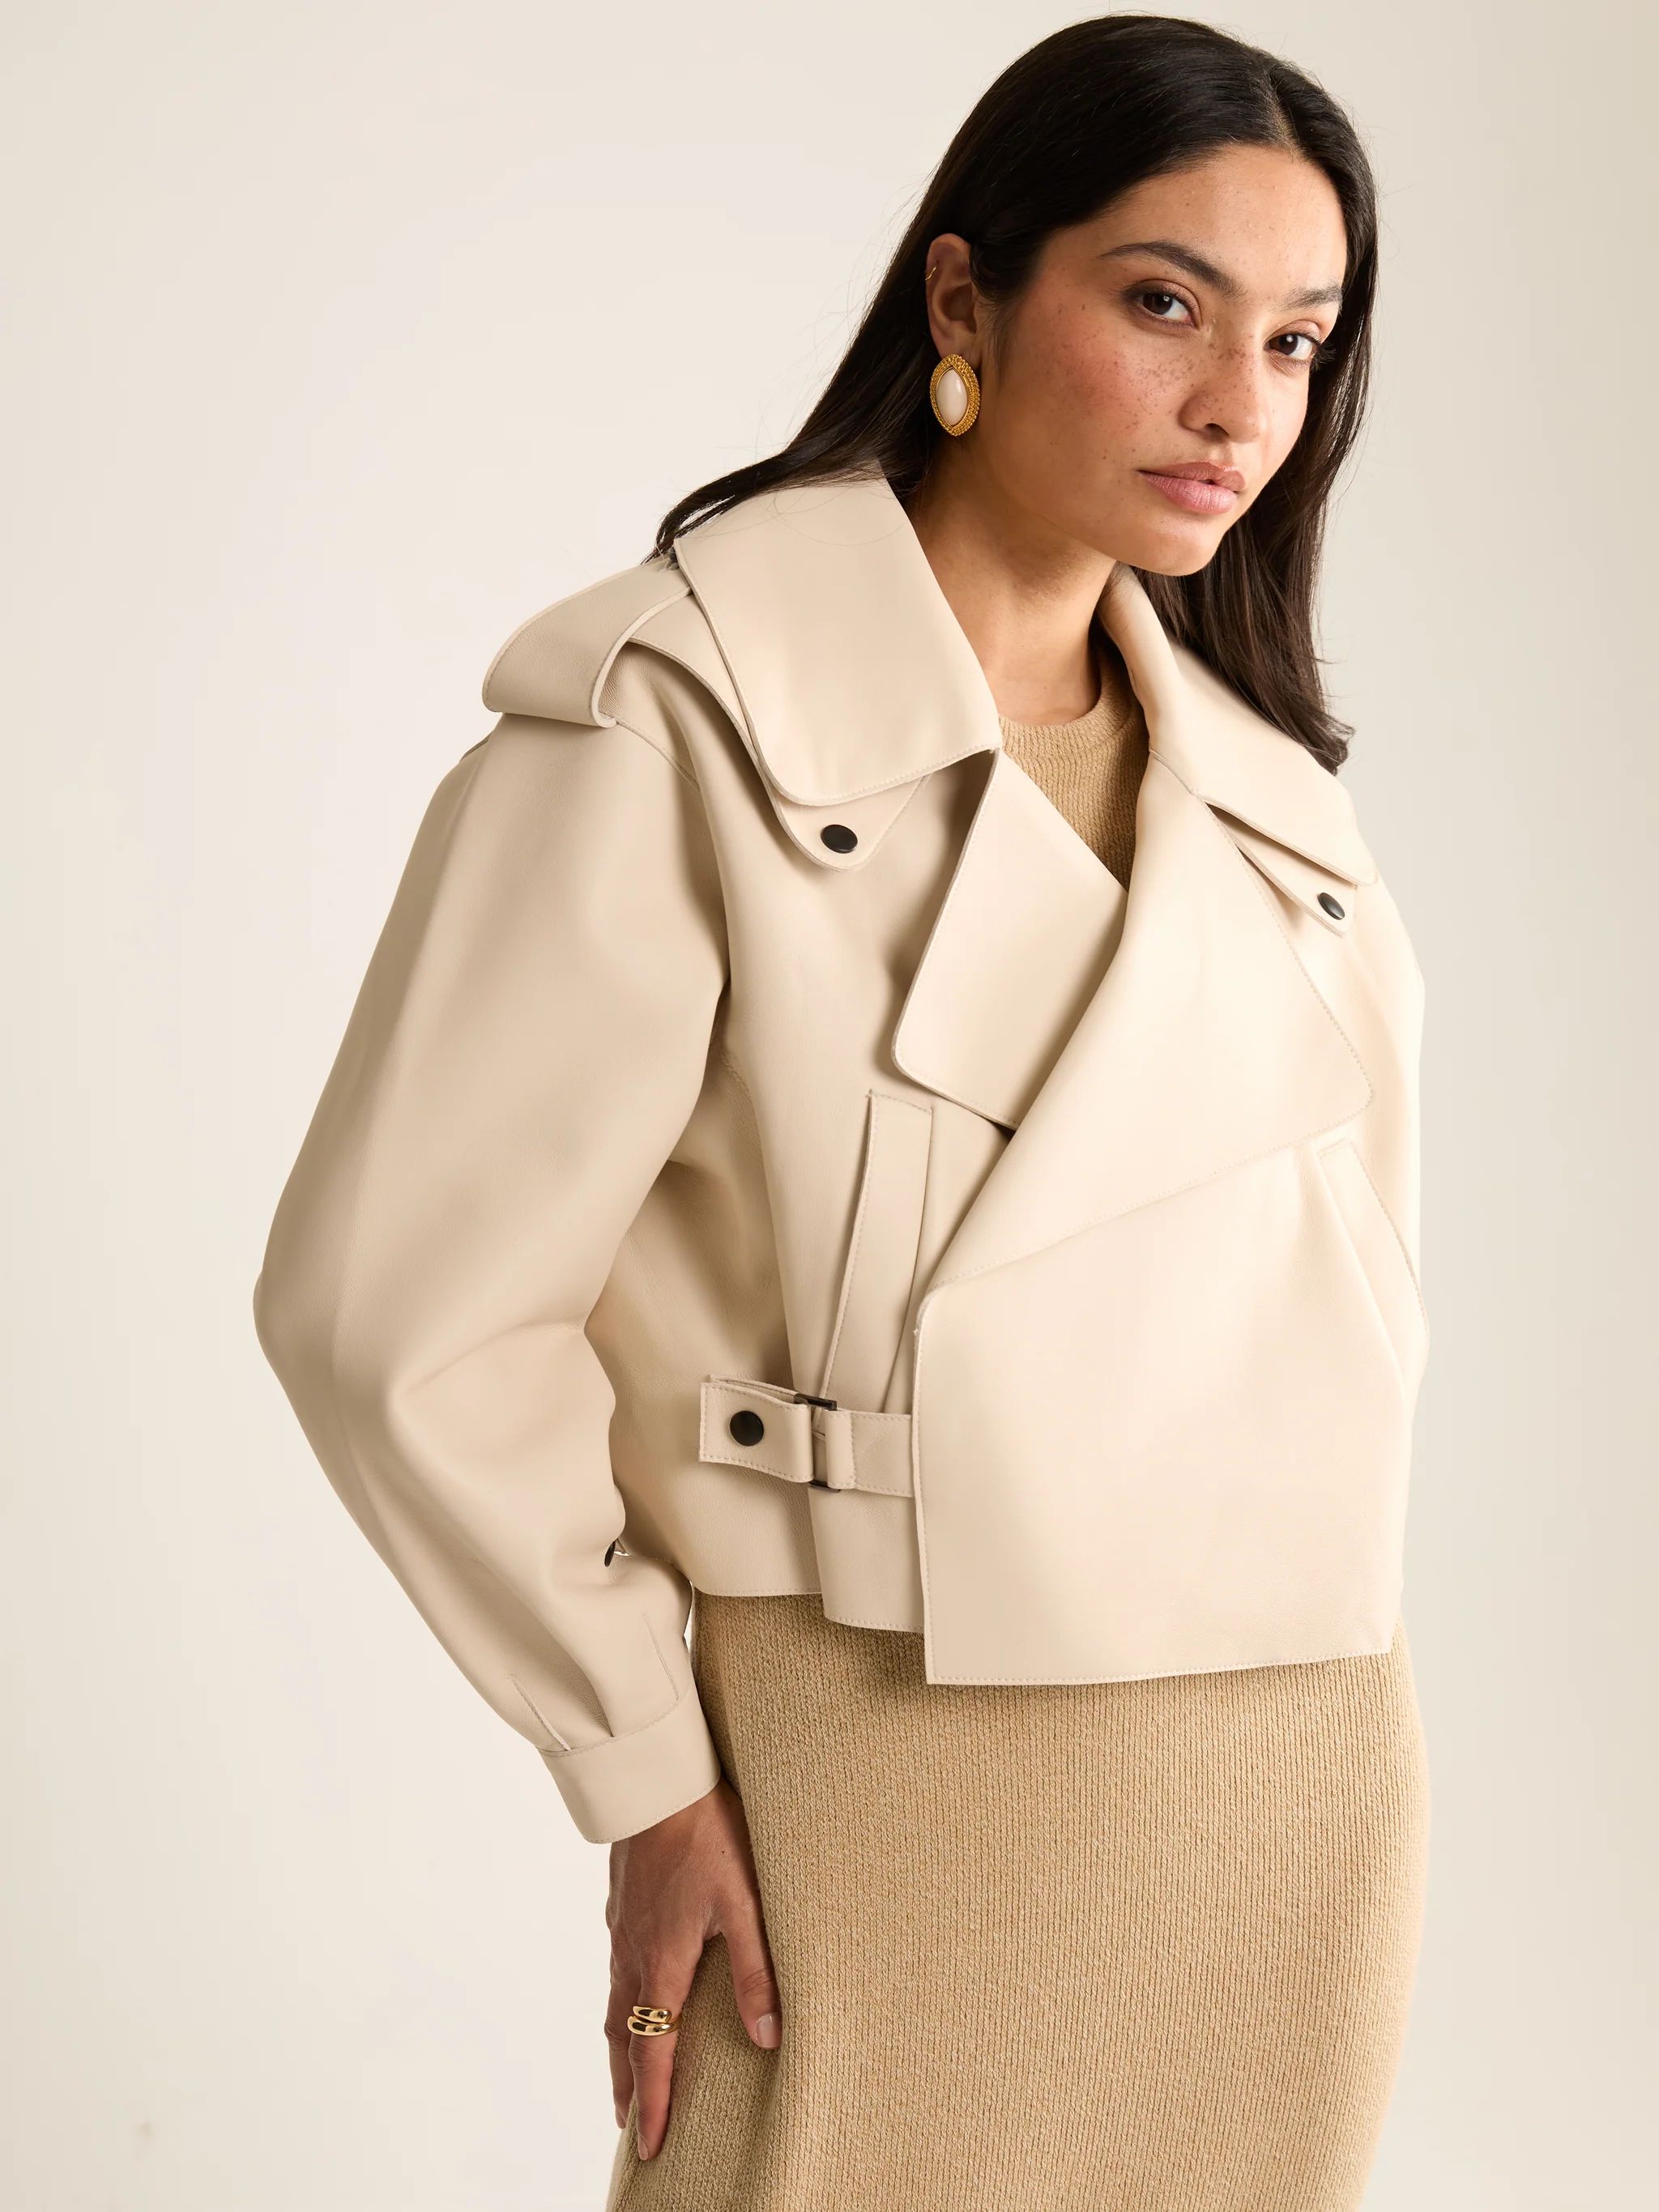 Contemporary Off White Oversized Leather Jacket | Jane and Tash Bespoke